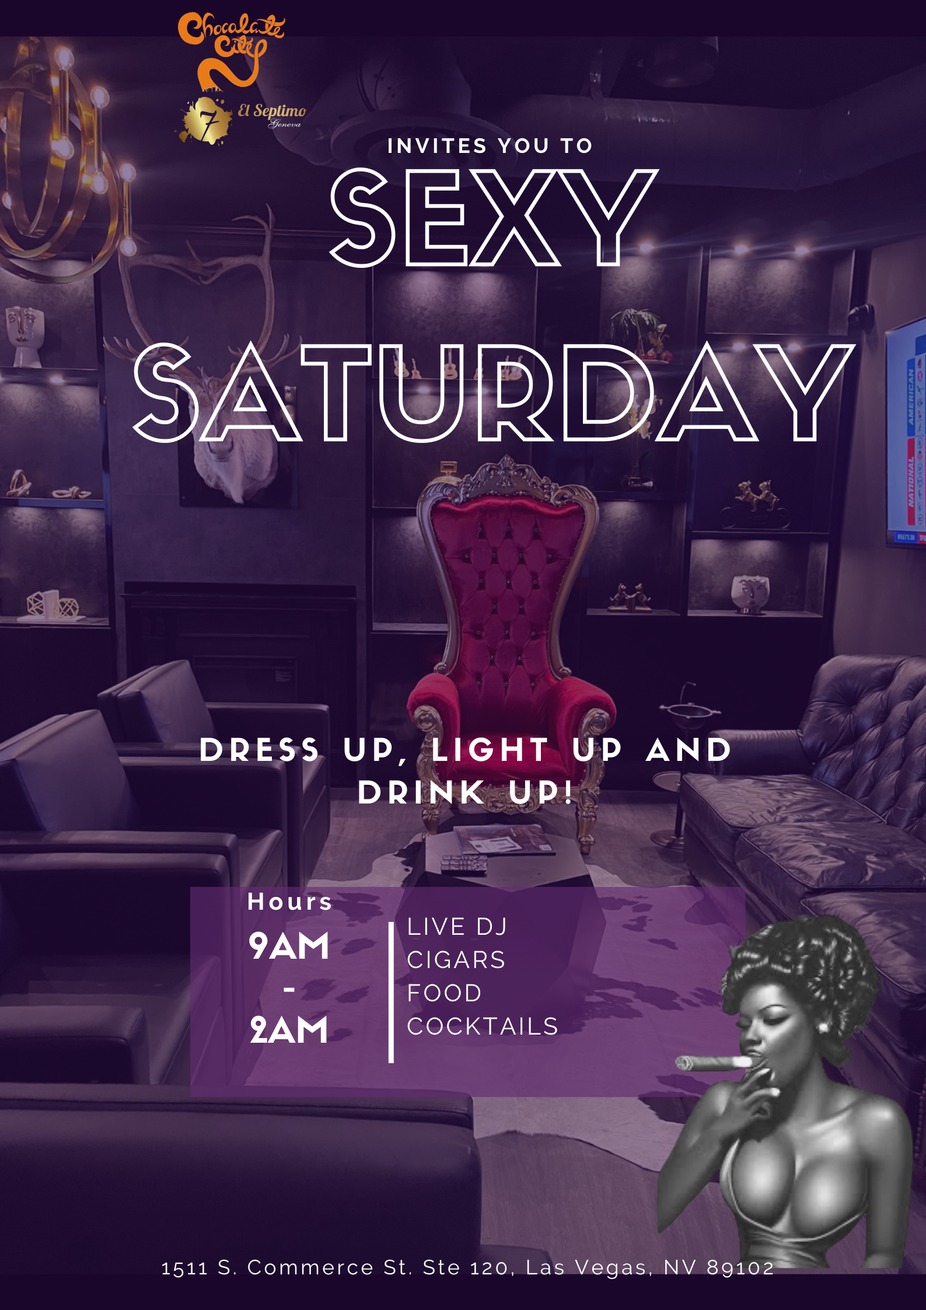 Sexy Saturday event photo